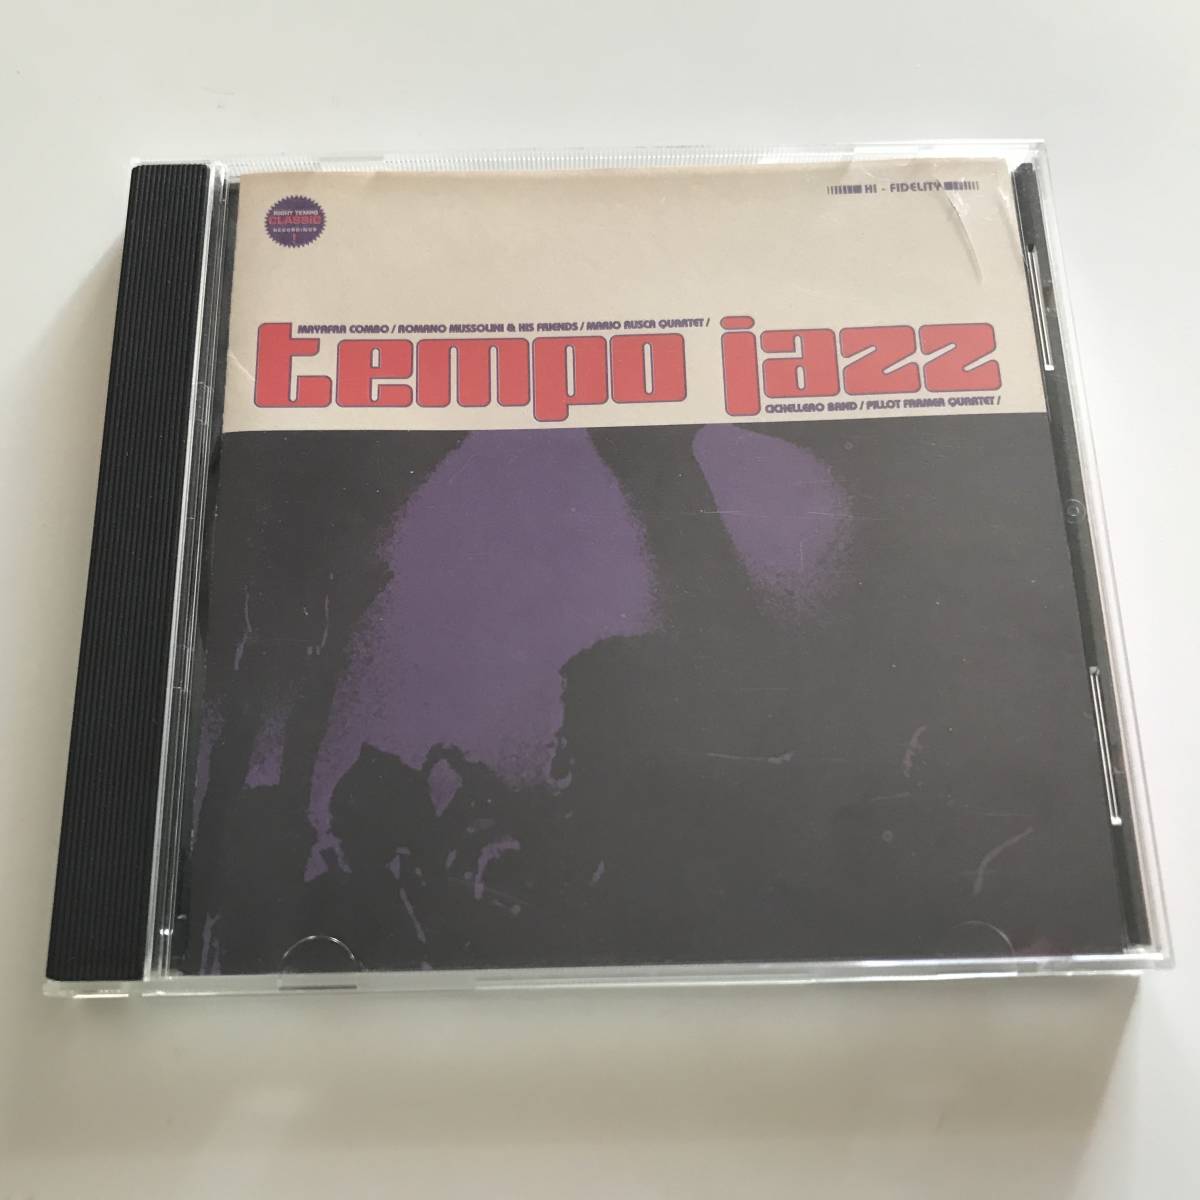 中古CD Tempo Jazz テンポ ジャズ Right Classics RTCL 801 イタリア Carosello メロウ 音源 グルーヴ 70年代 Mayafra 定番スタイル 新品?正規品 Combo CD